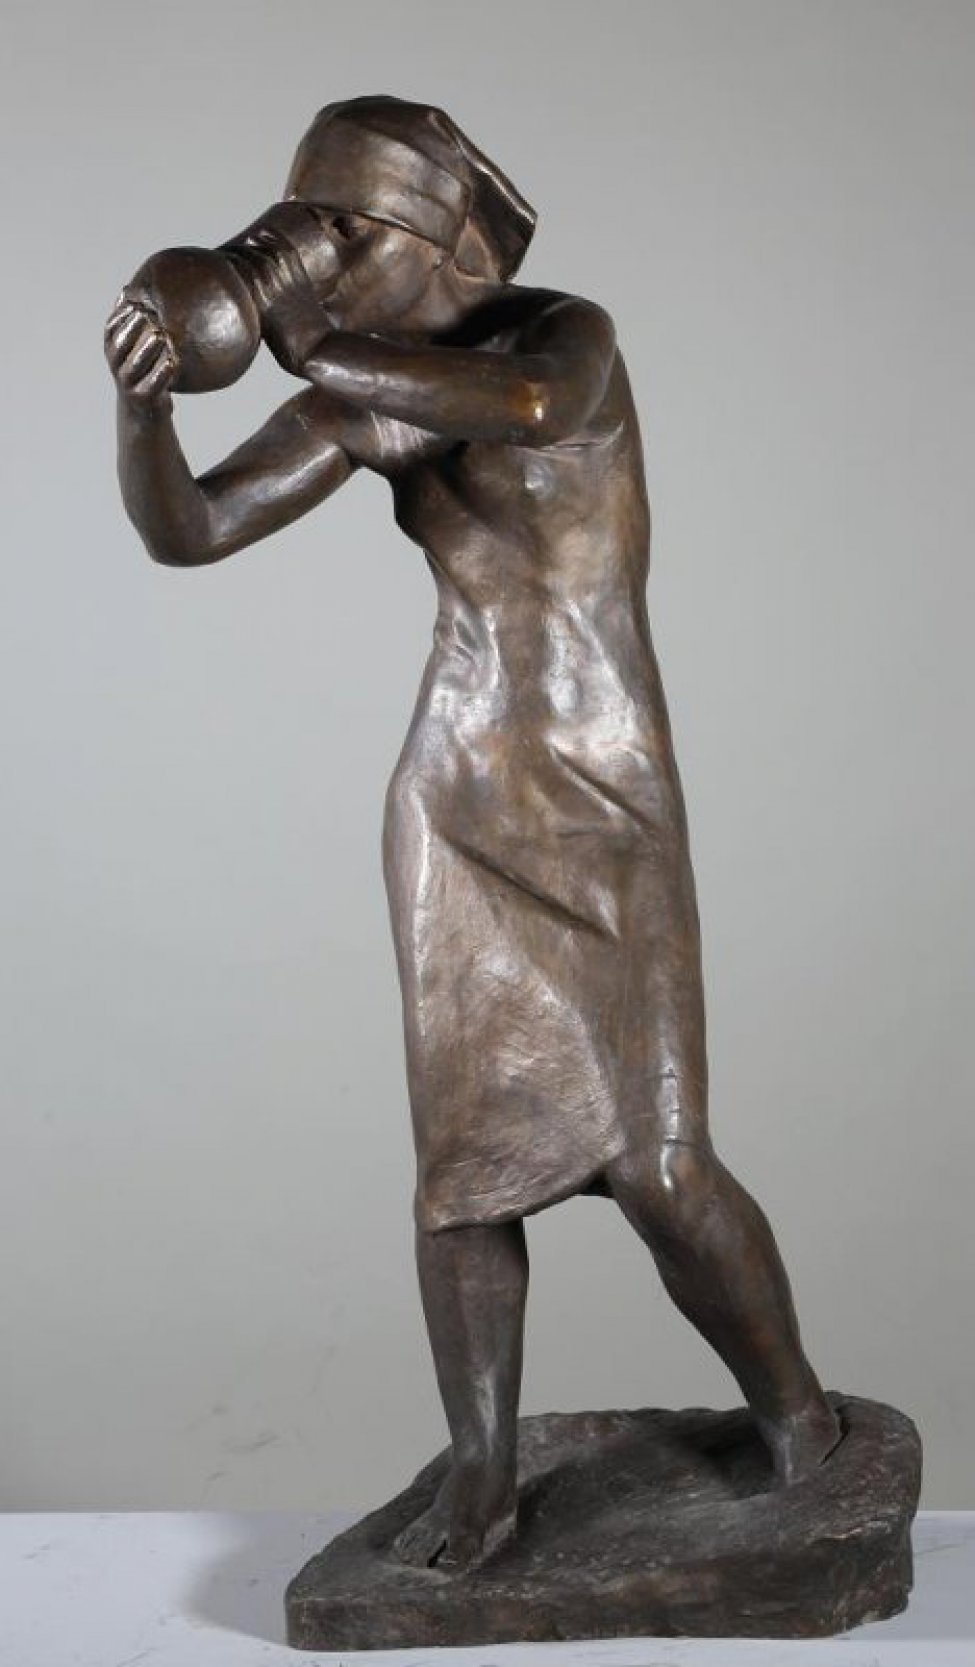 Изображена стоящая девушка в сарафане и платке на голове. Левая нога отставлена в сторону. Обеими руками держит кувшин, поднесенный ко рту.
Обрамление: Постамент неправильной прямоугольной формы.